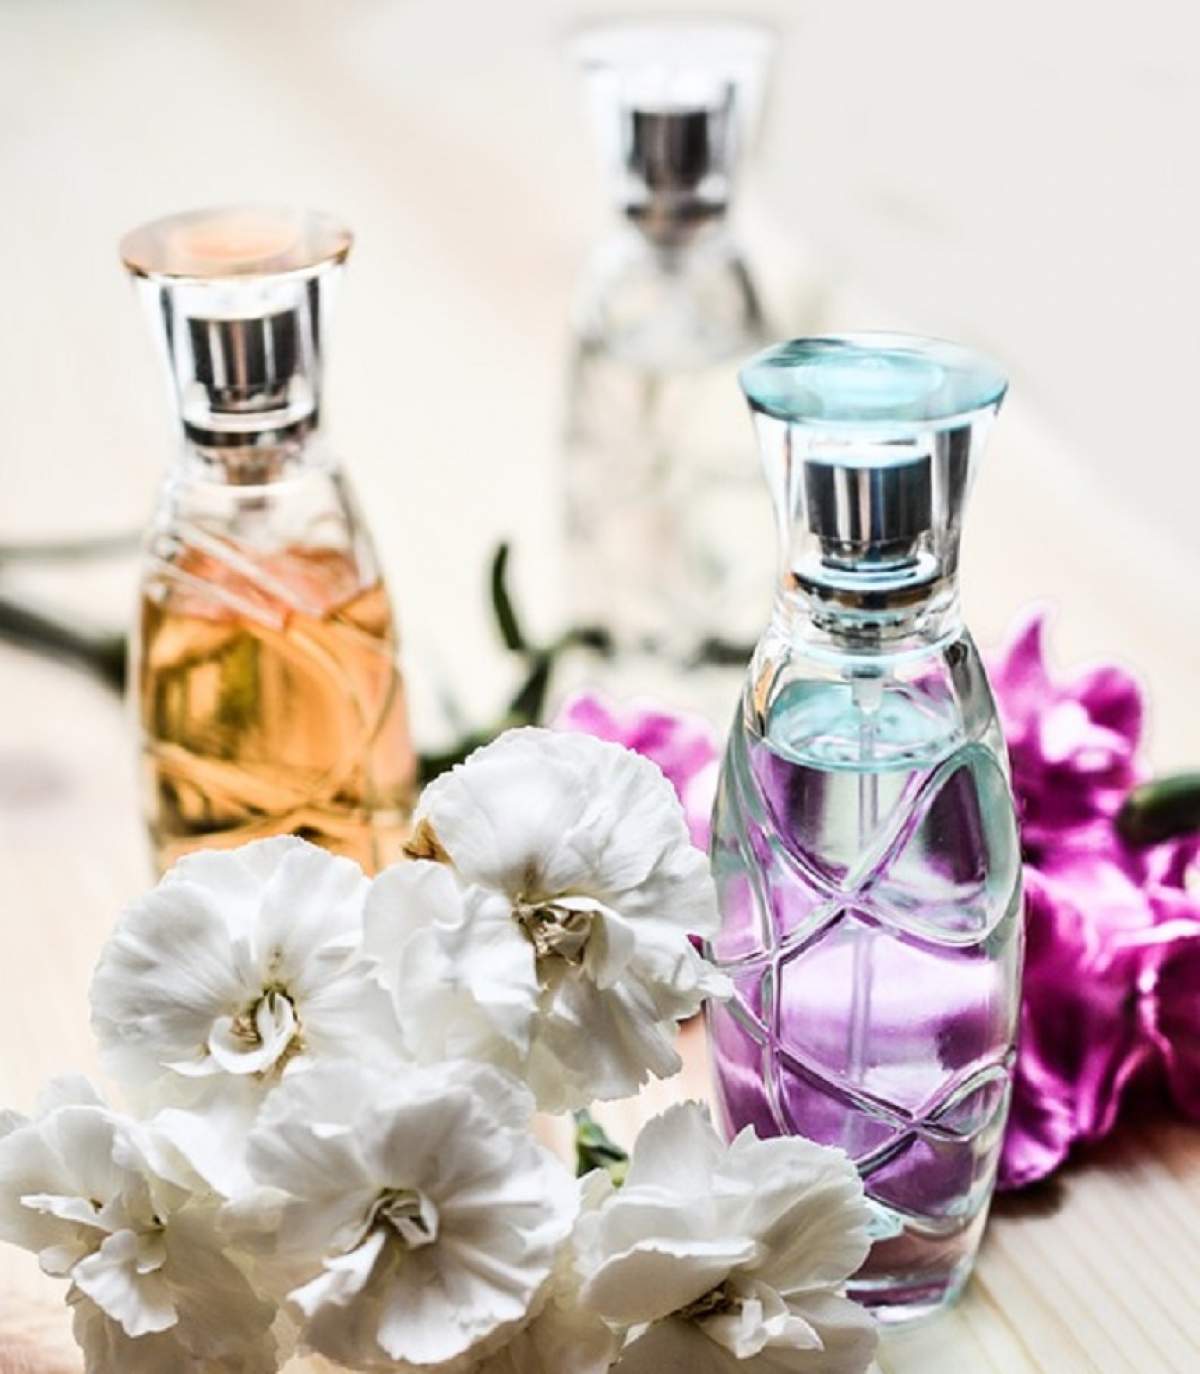 VIDEO / Parfumul este toxic? Citeşte eticheta înainte să îl cumperi! Dacă se regăsesc aceste lucruri renunţă la el